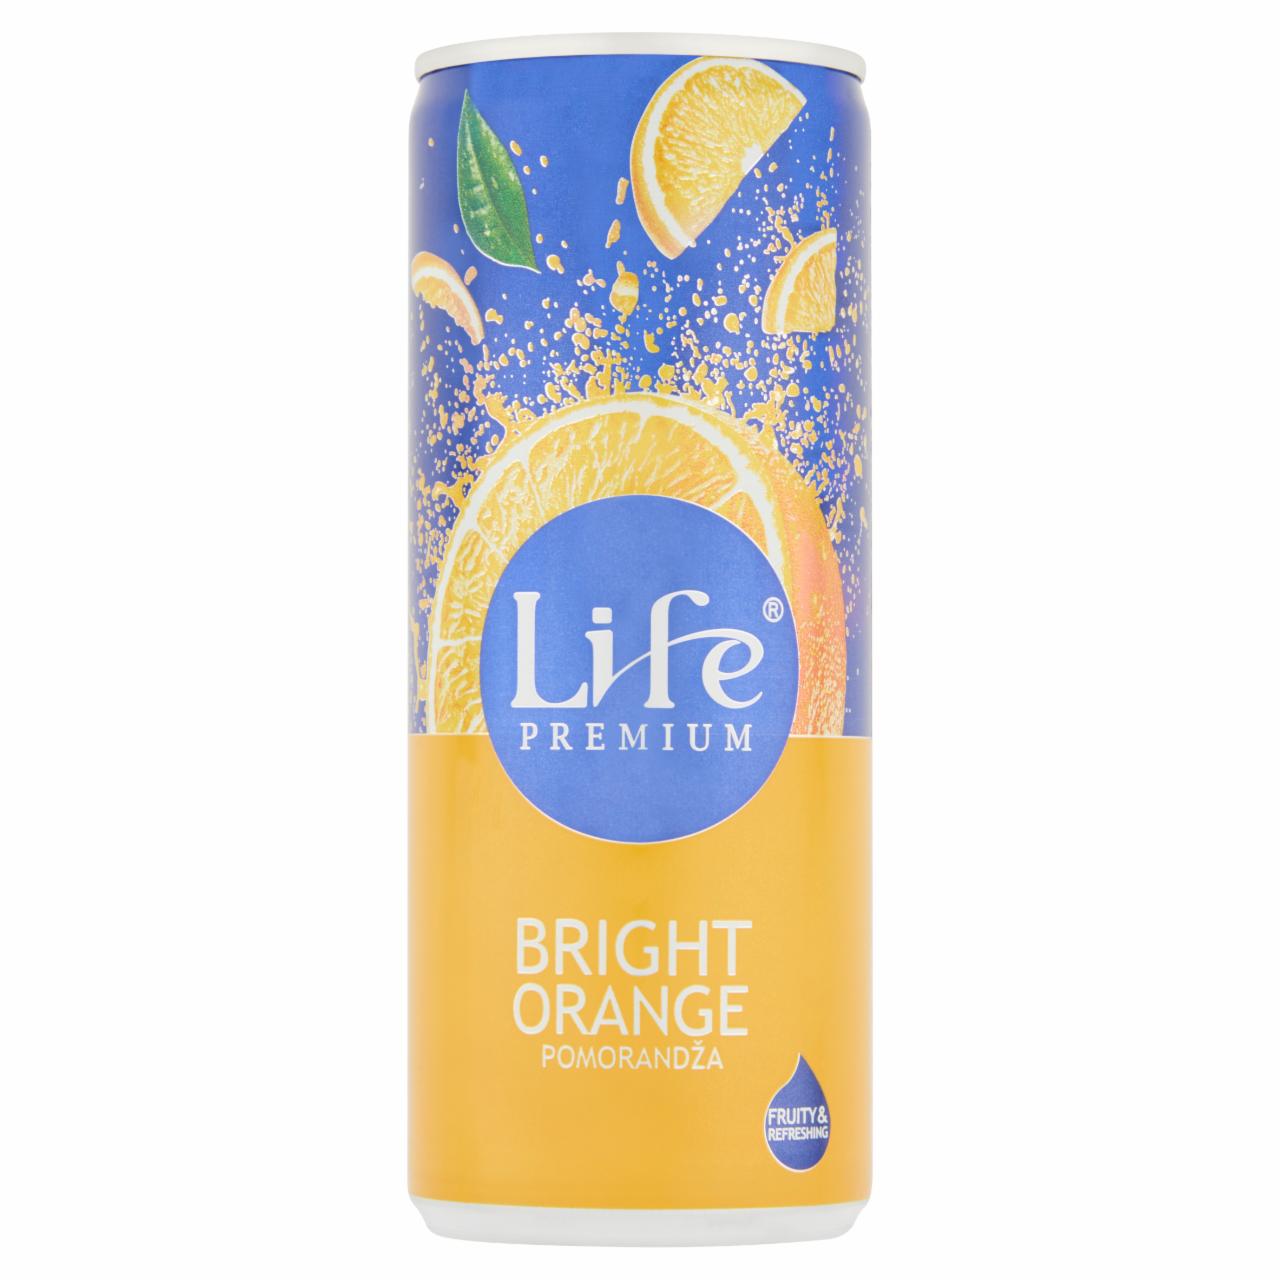 Képek - Life Premium Bright Orange szűrt narancsital 250 ml